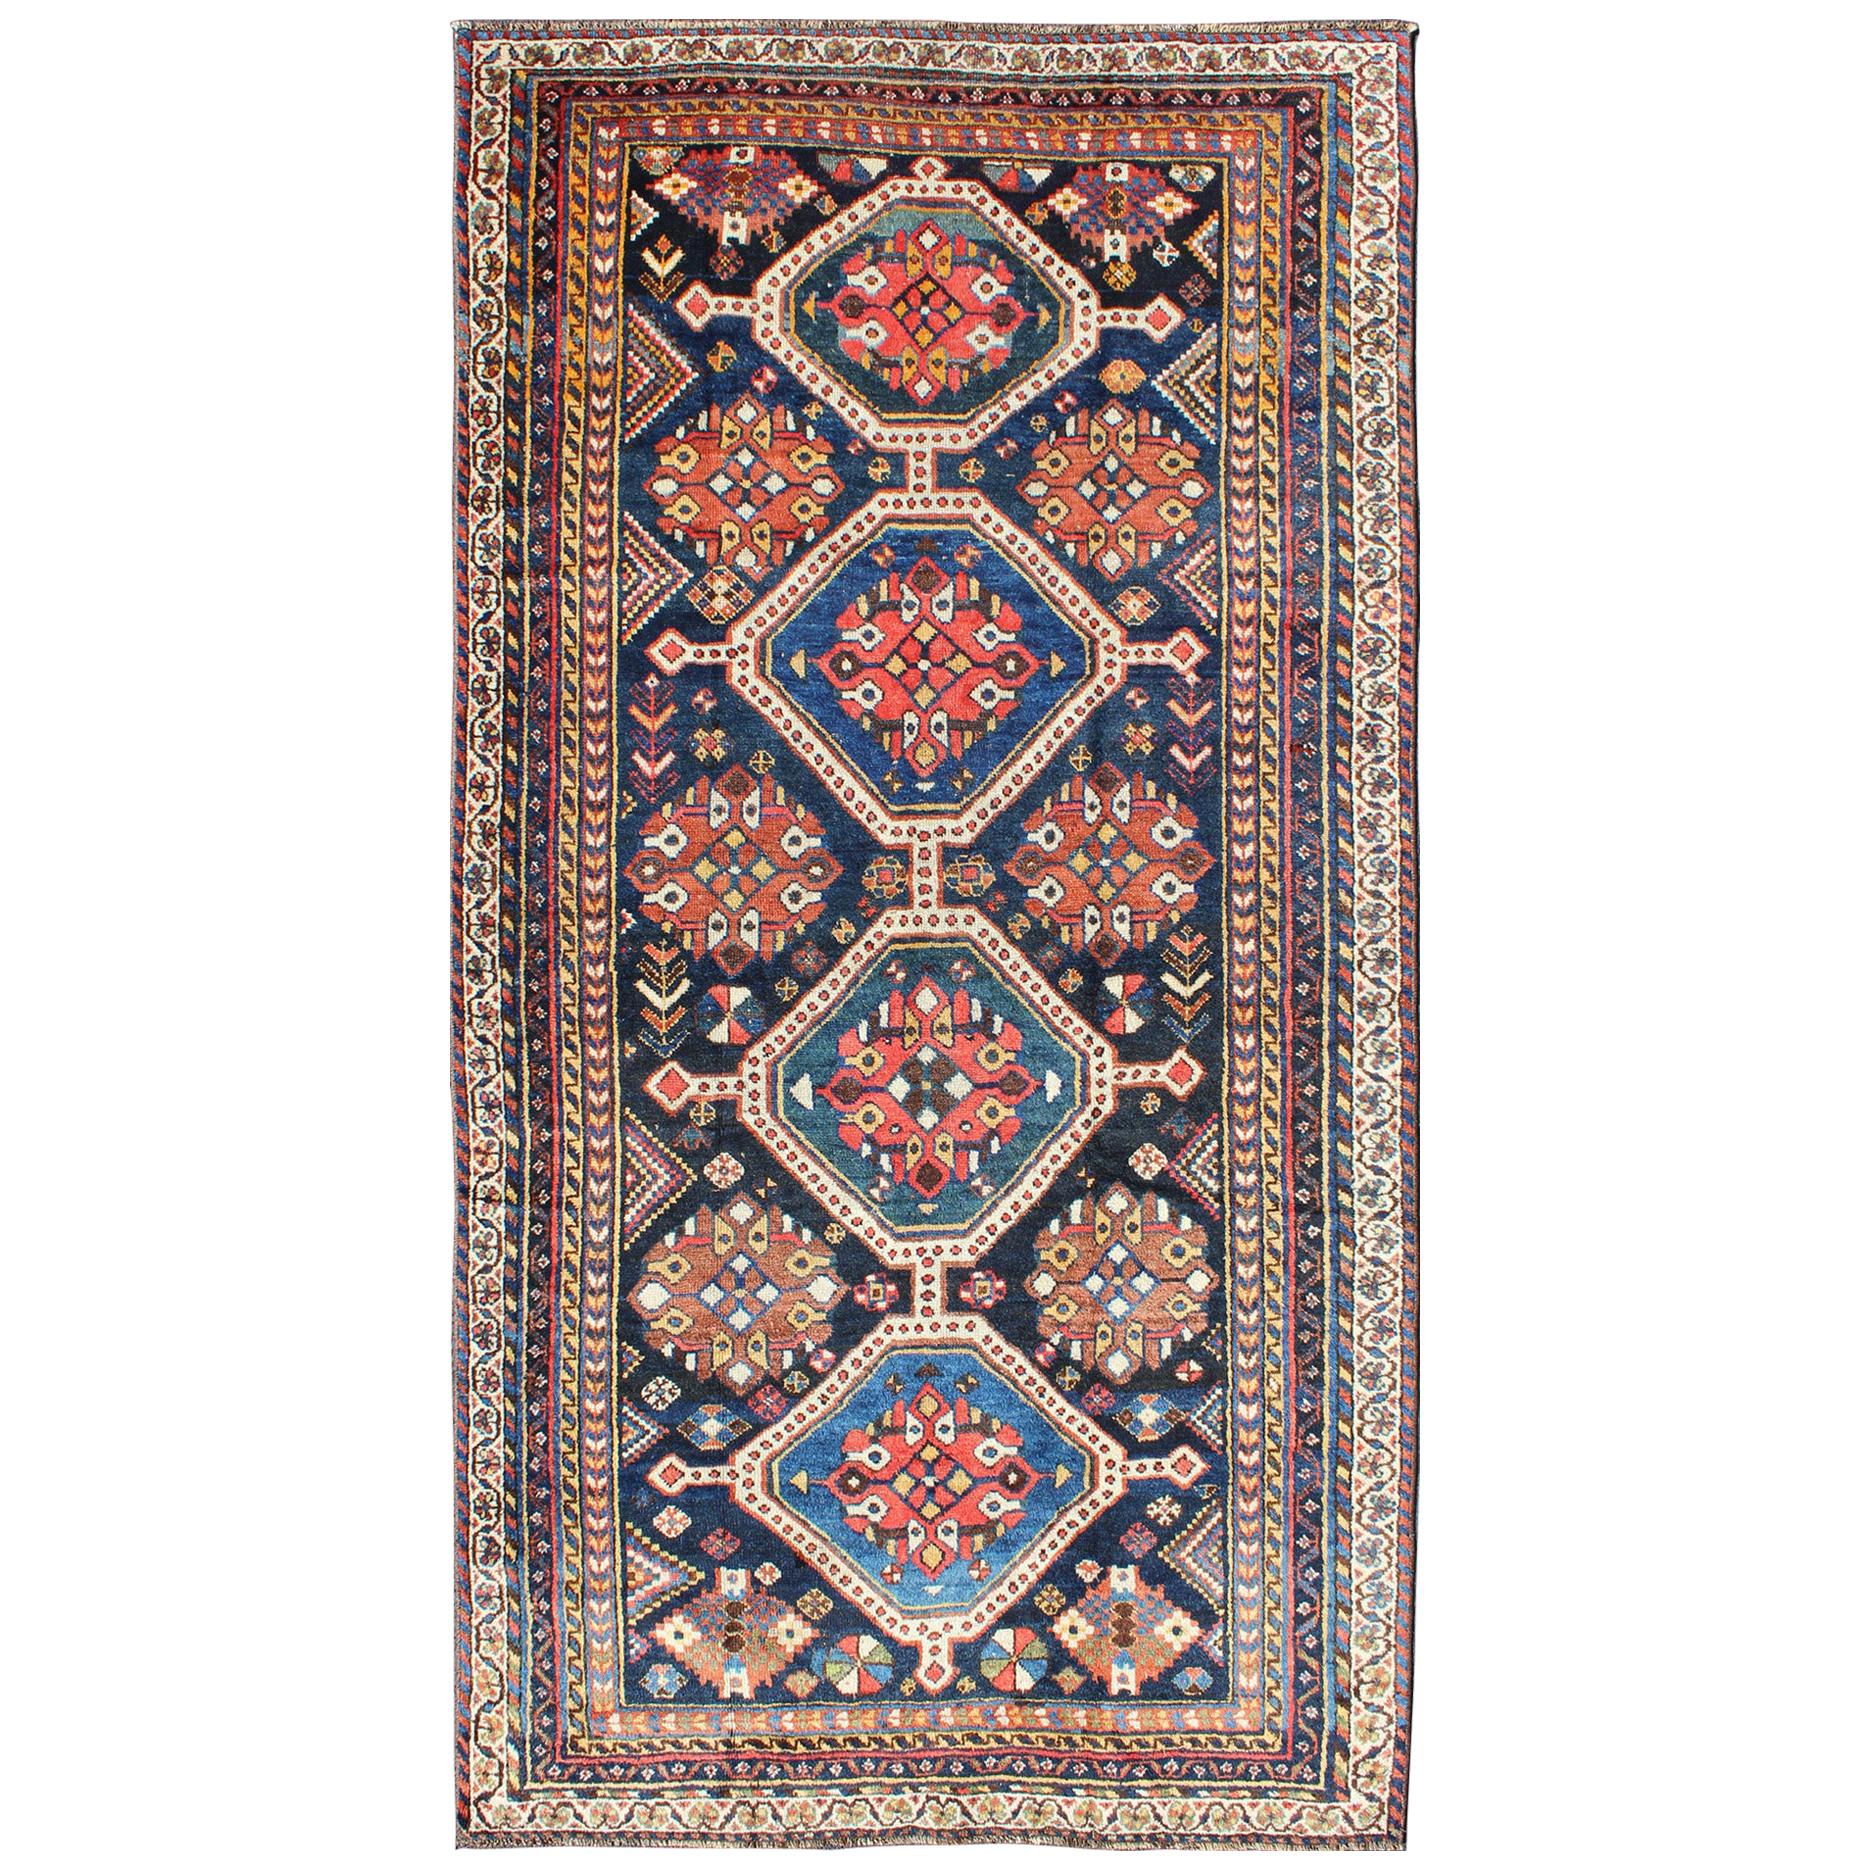 Antiker persischer Qashqai-Teppich mit Vier-Medaillon-Design in Blau, Rot, Brauntönen